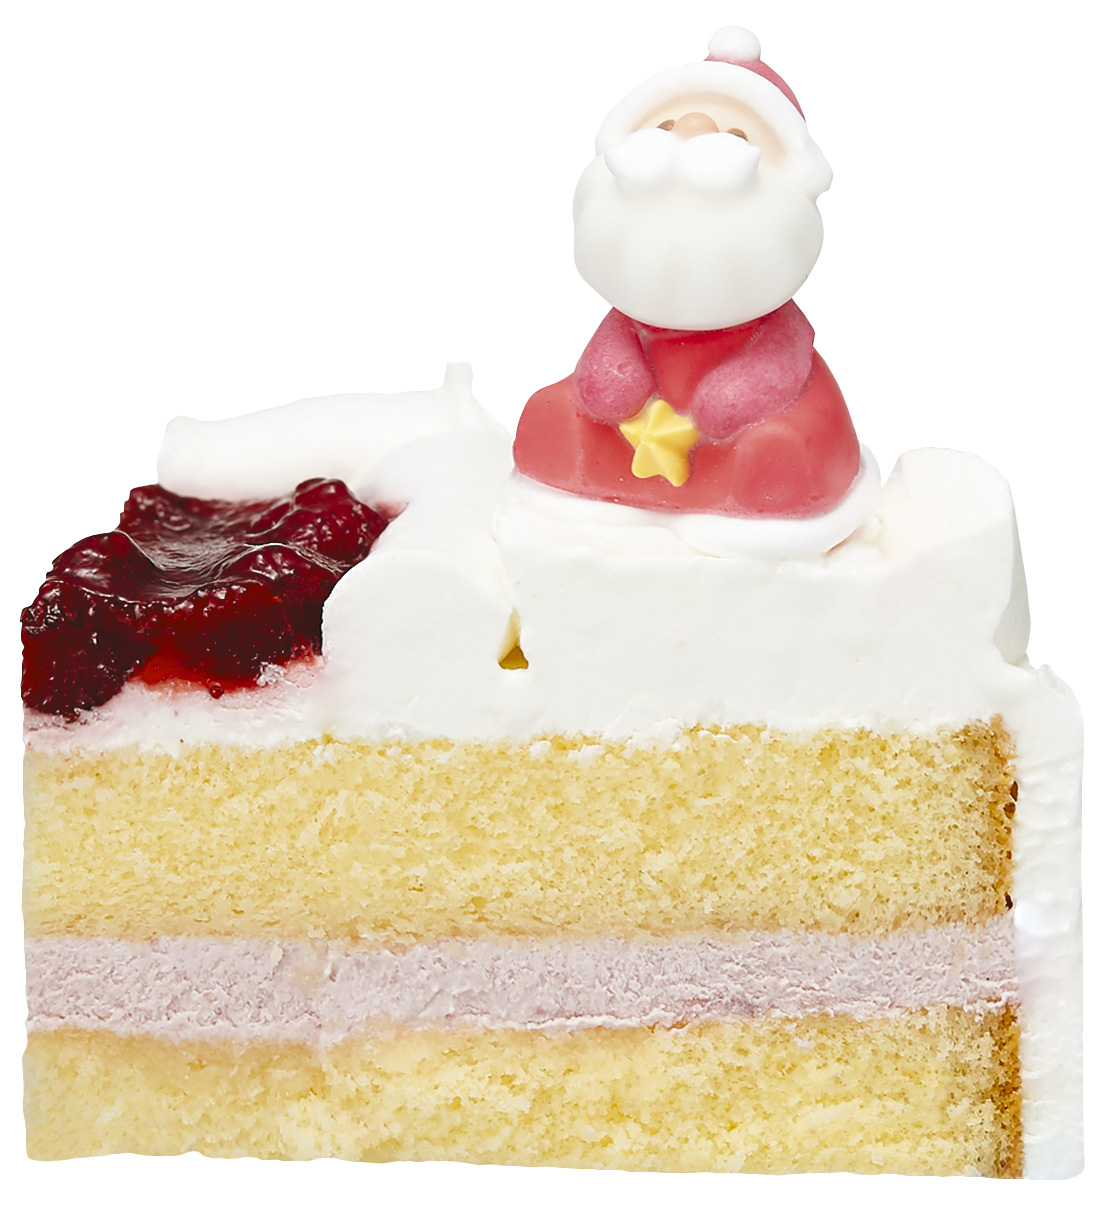 スワン クリスマスケーキ １１月から予約スタート ヤマト運輸労働組合